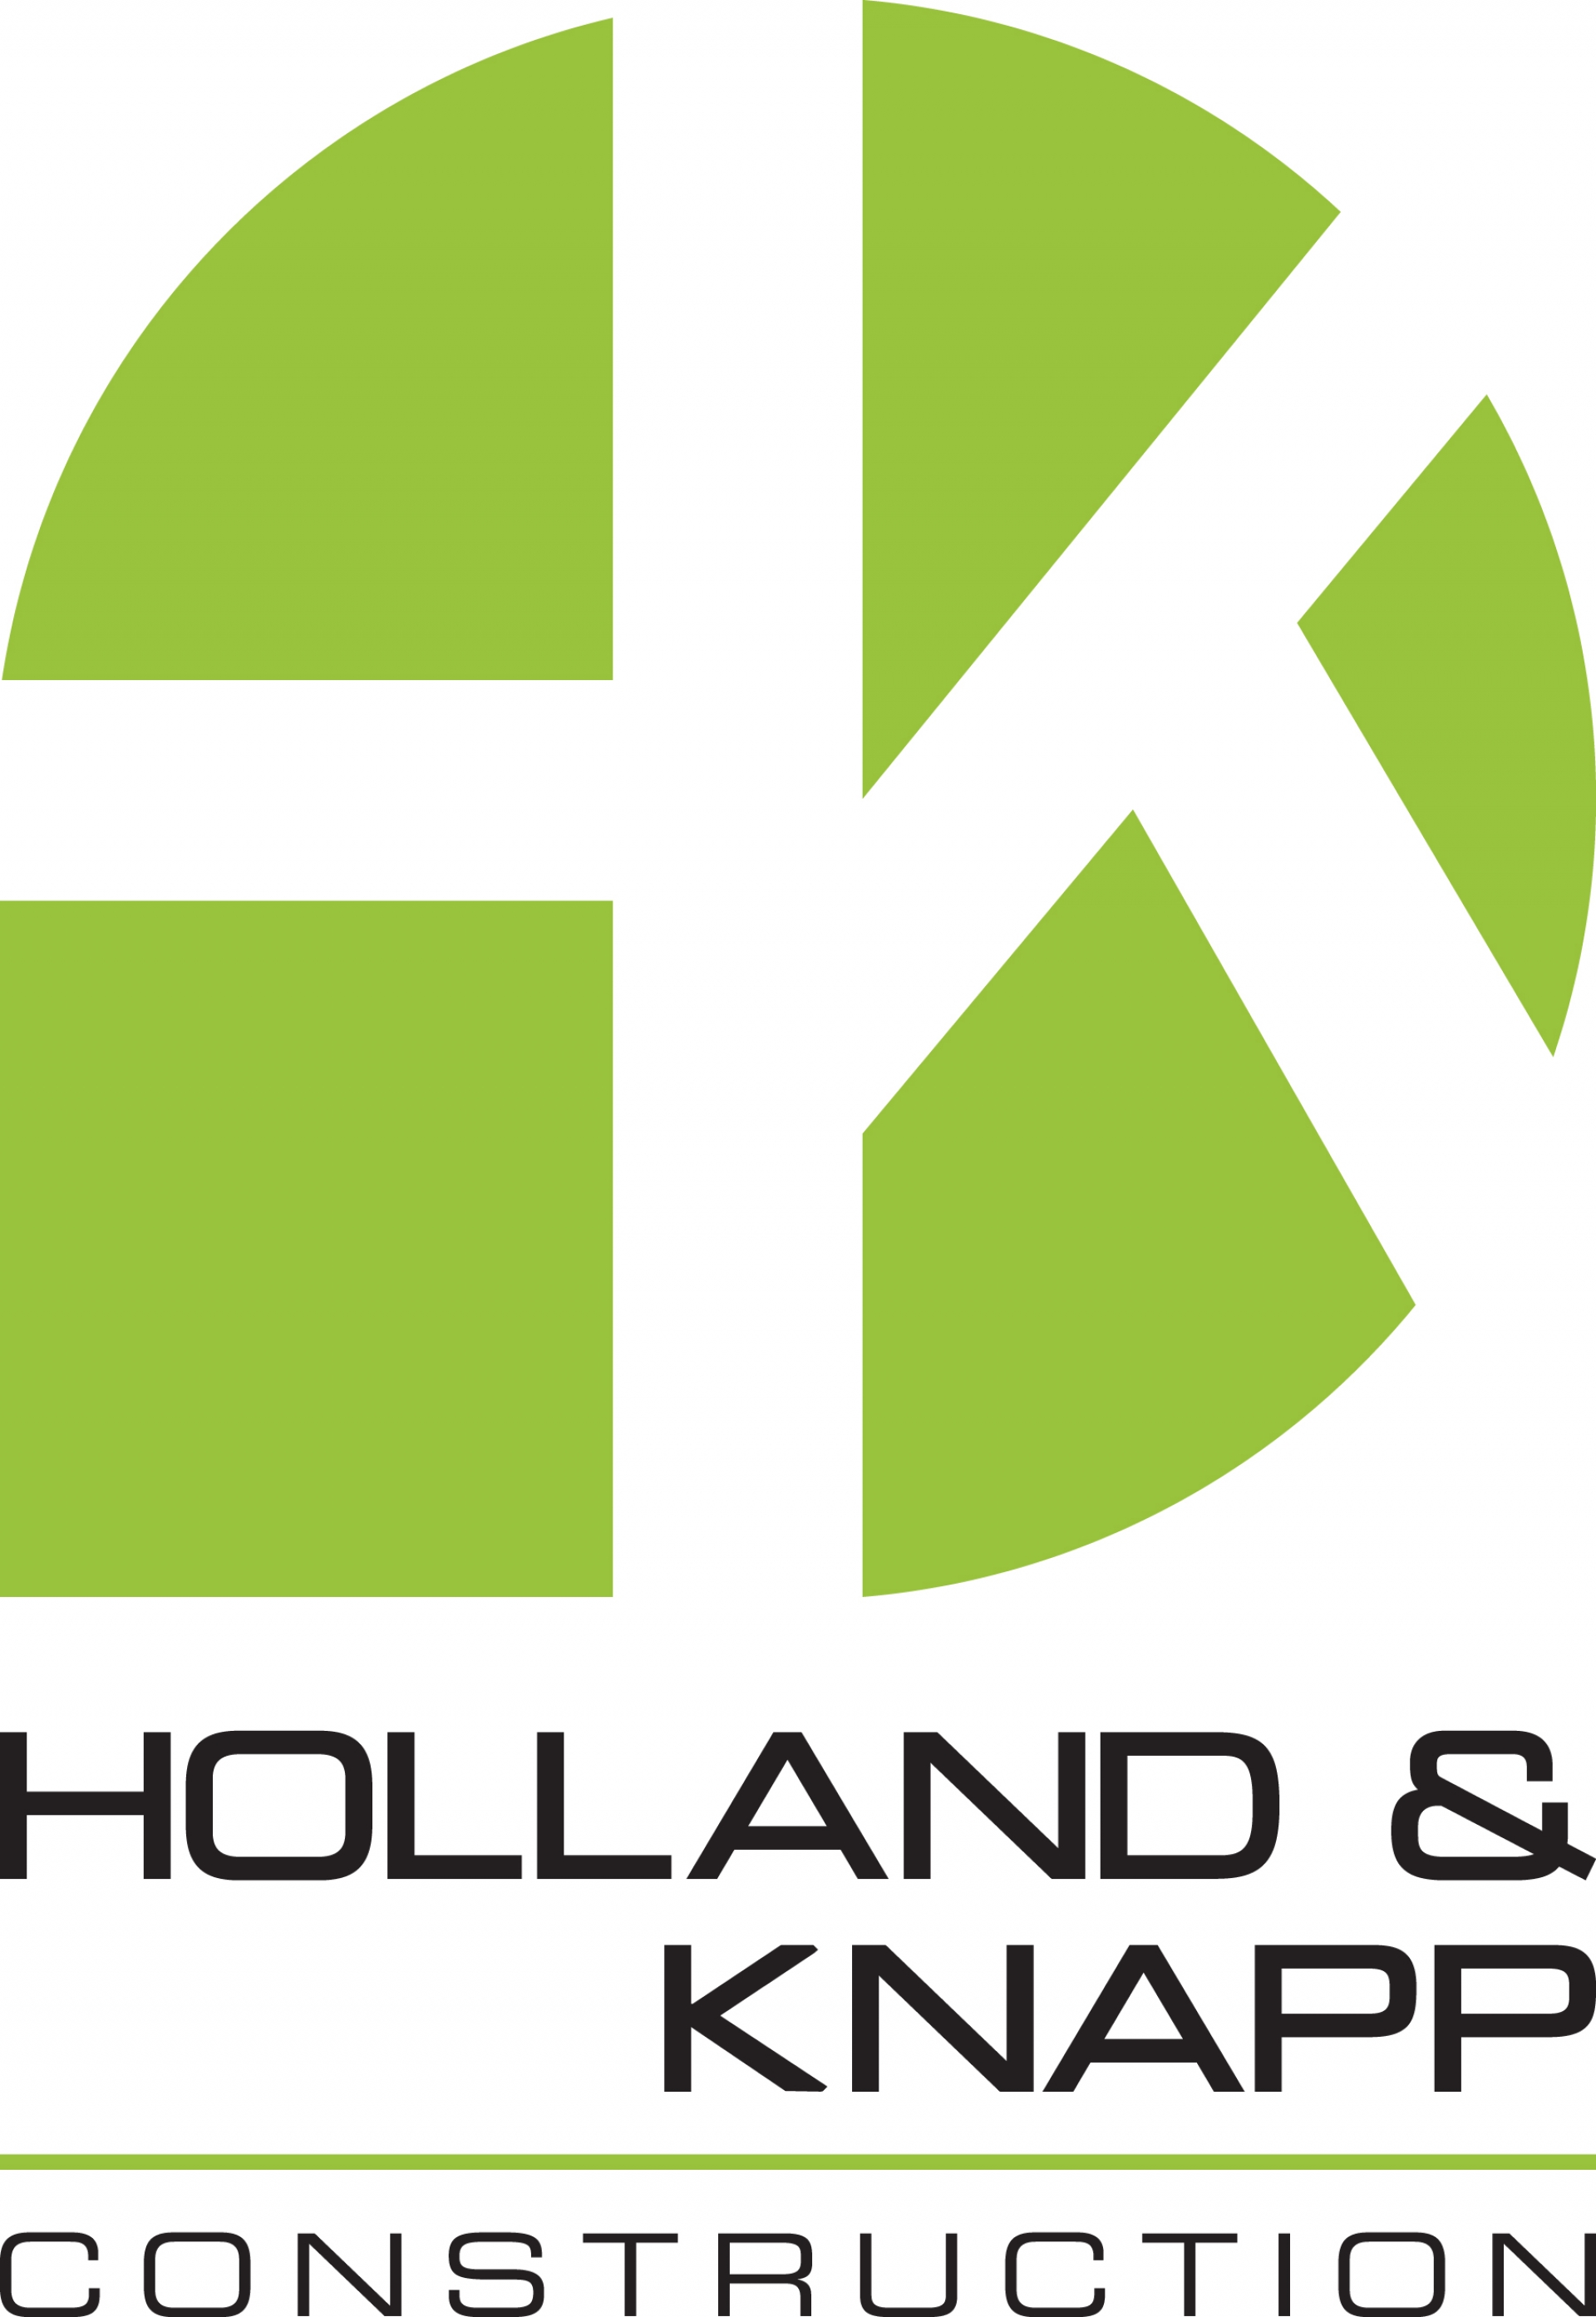 Holland and Knapp Construction company logo